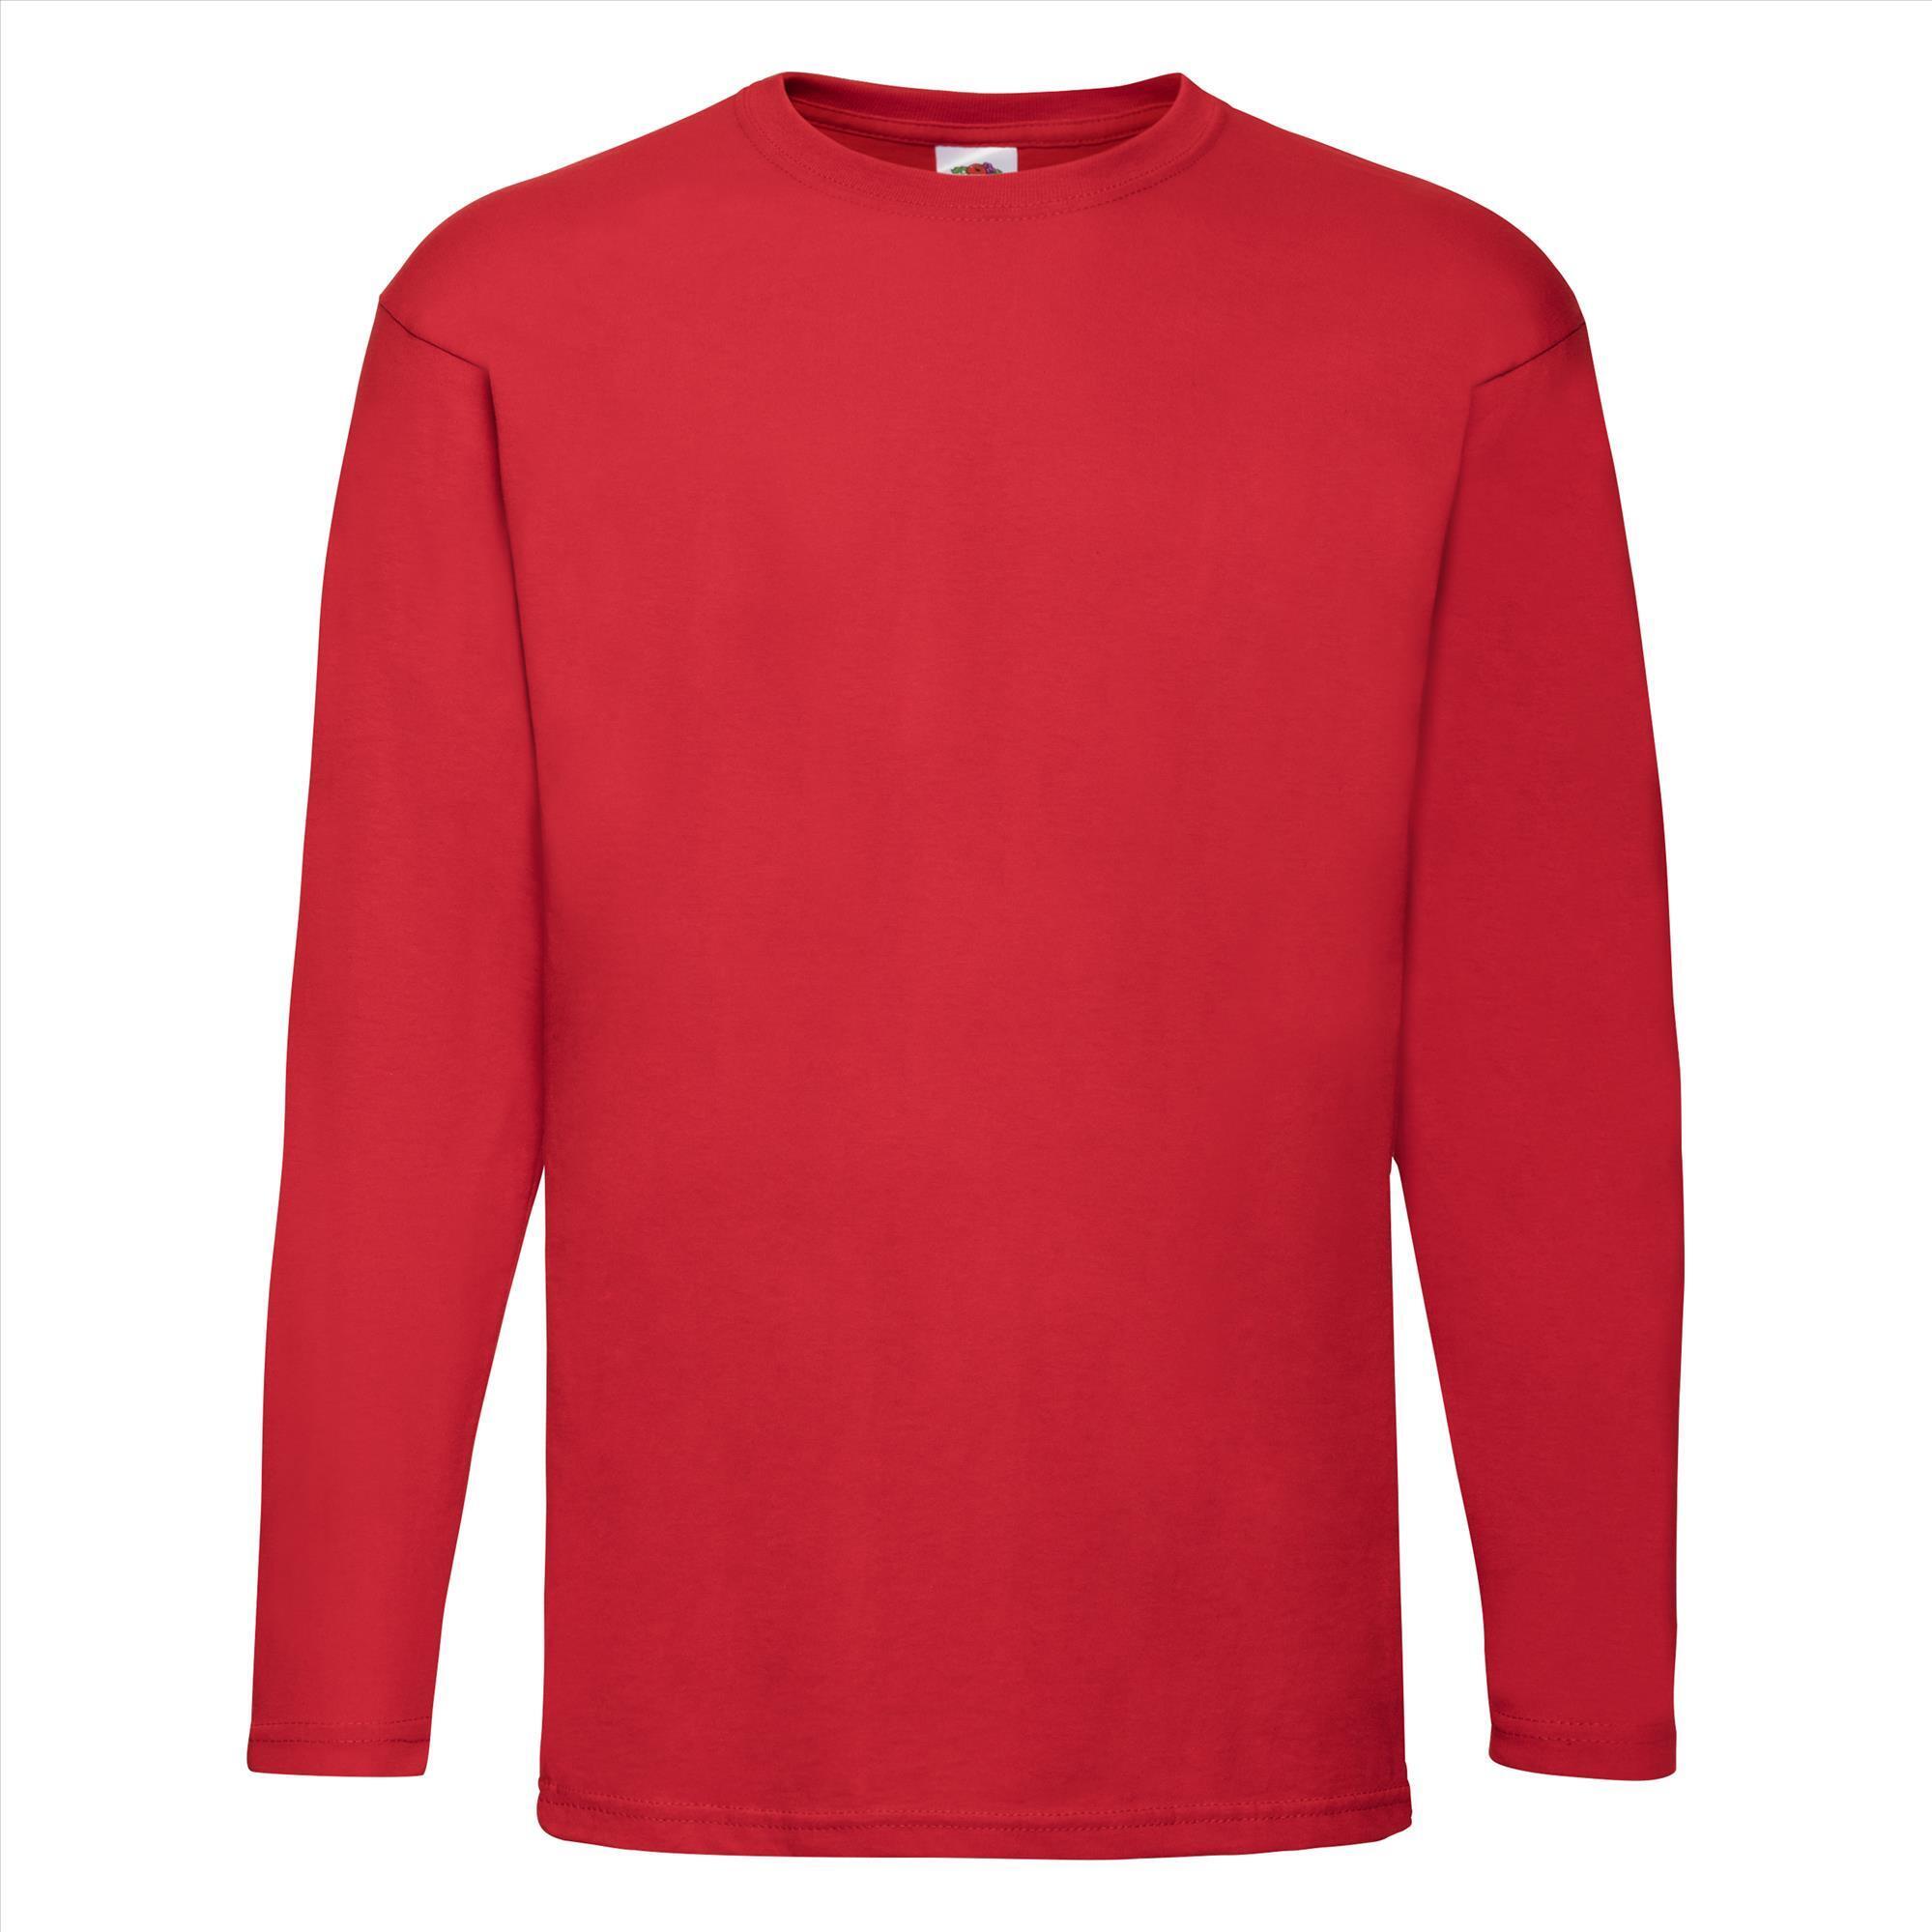 T-shirt rood lange mouwen voor mannen bedrukbaar te personaliseren